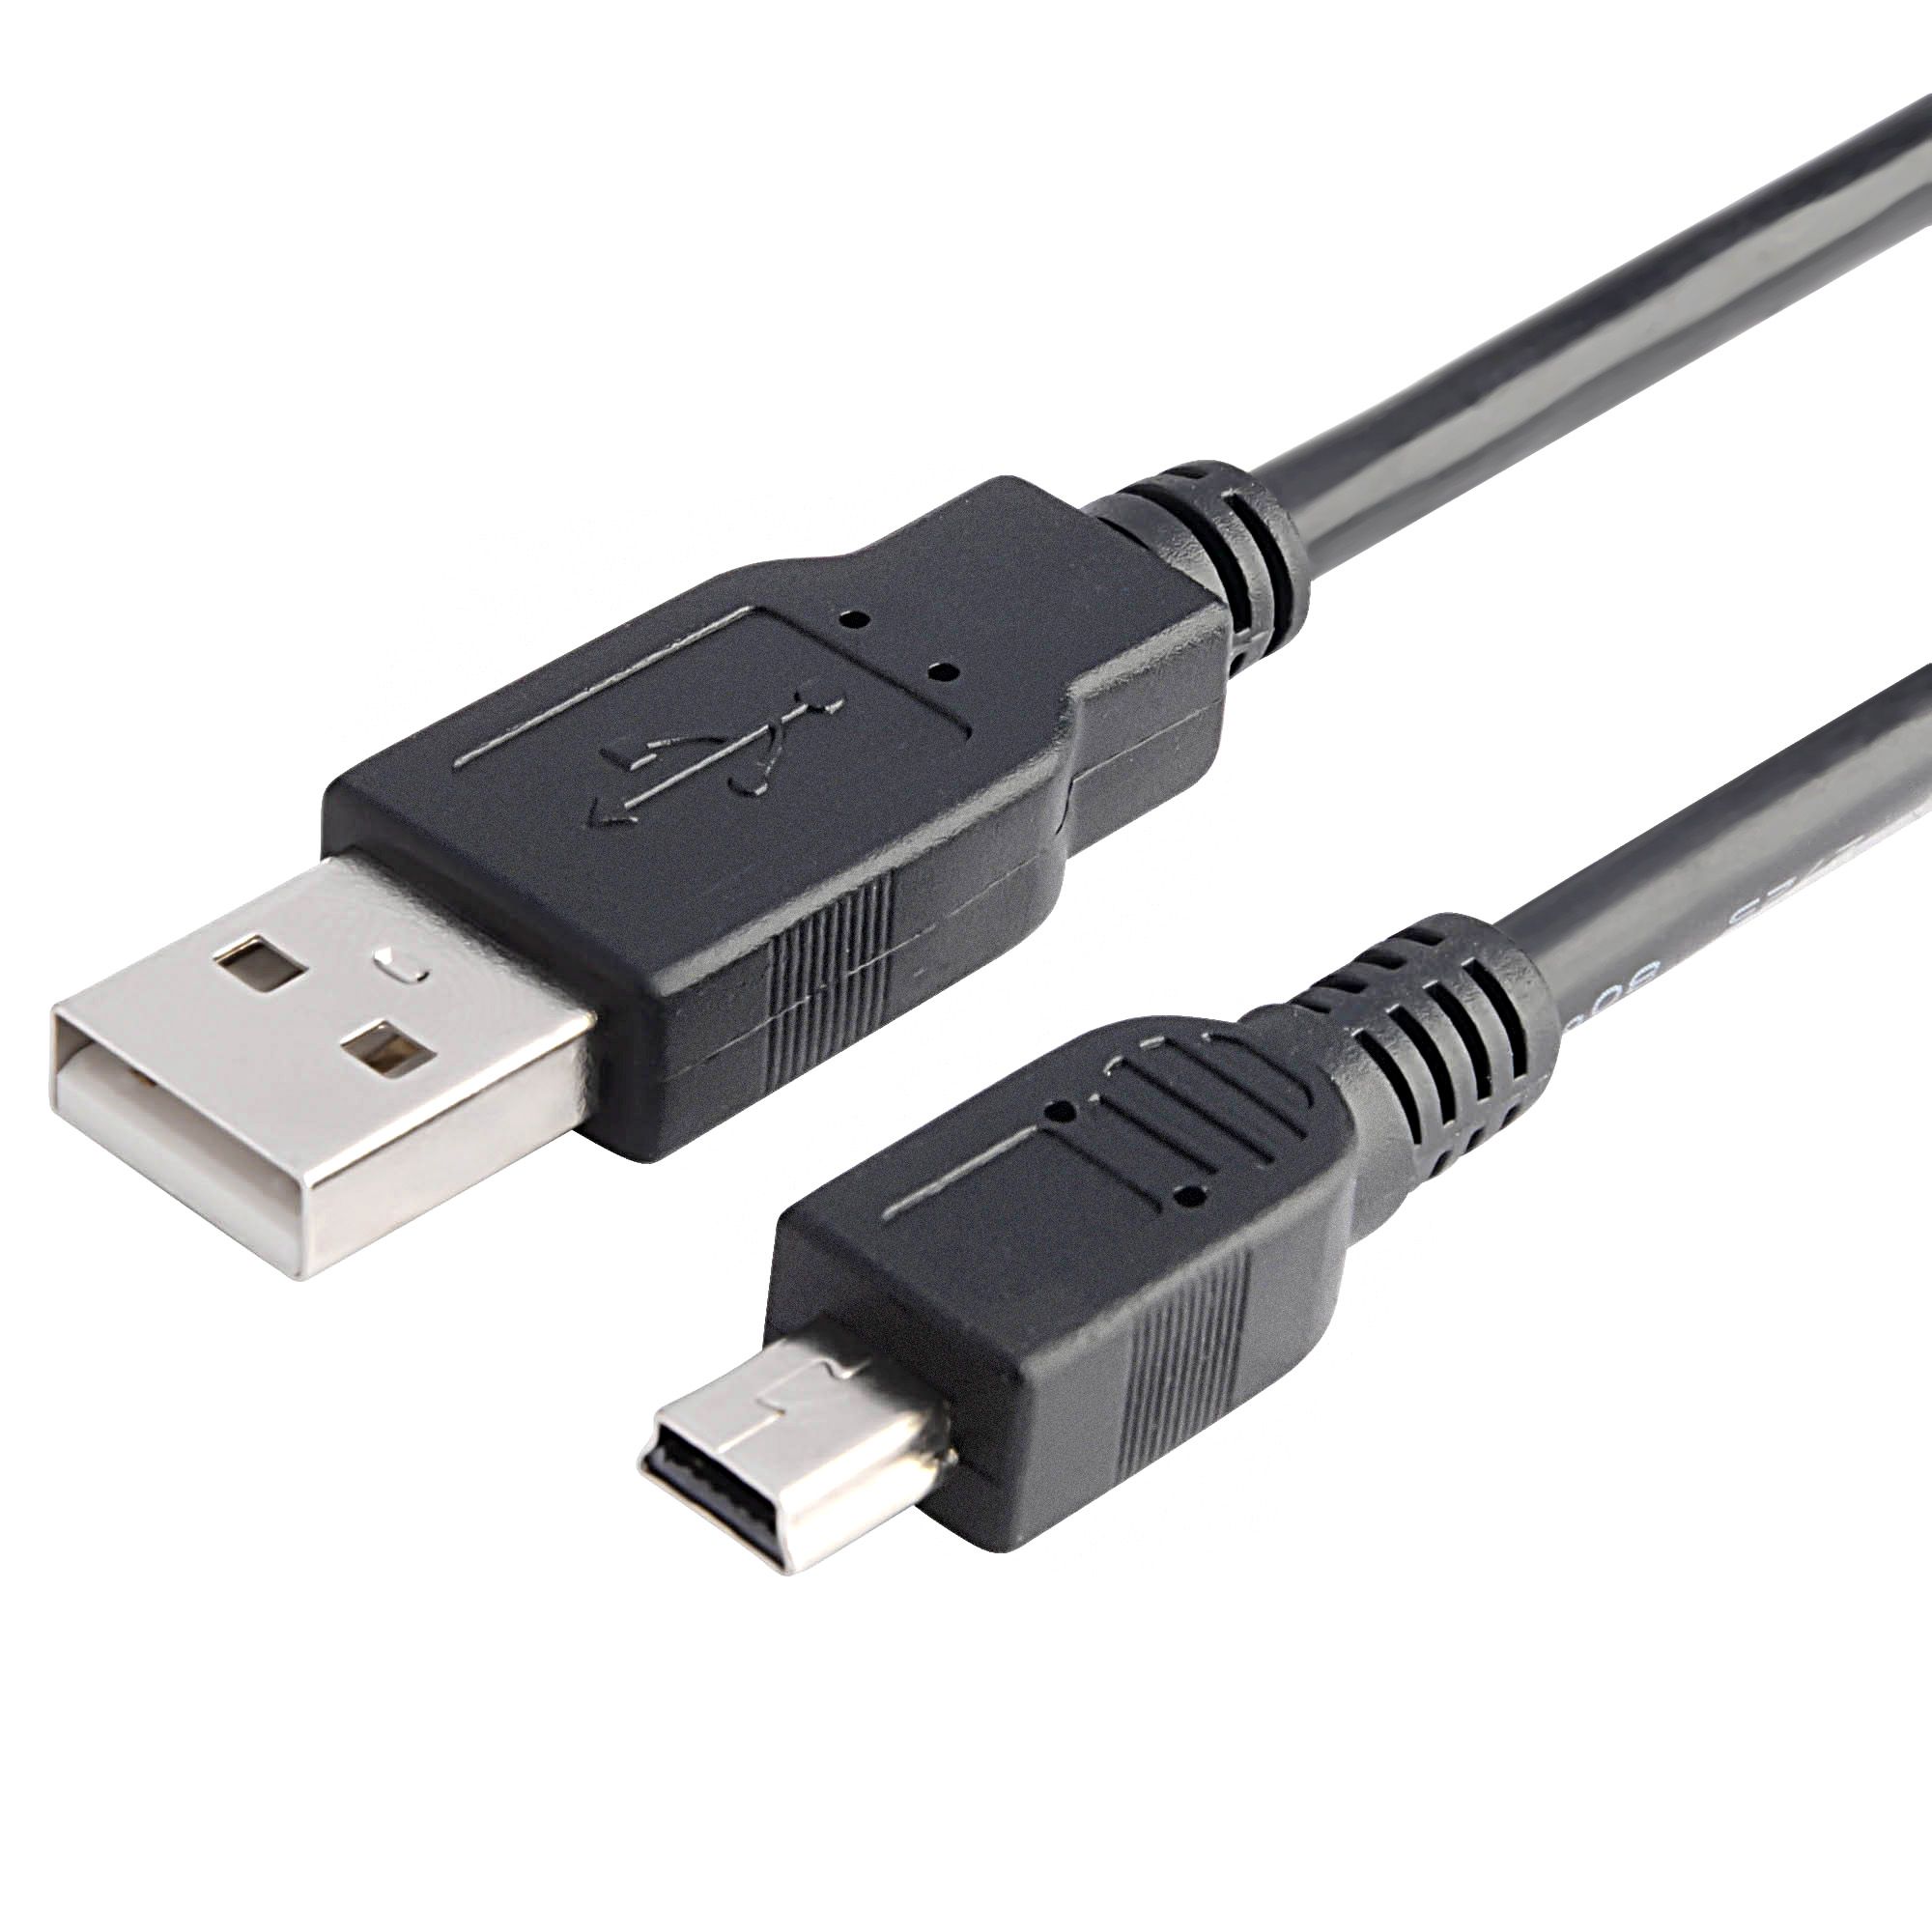 Nieuwe Oplaadkabel Mini USB voor PS3 Controllers - 2.5m Kopen | Playstation 3 Hardware